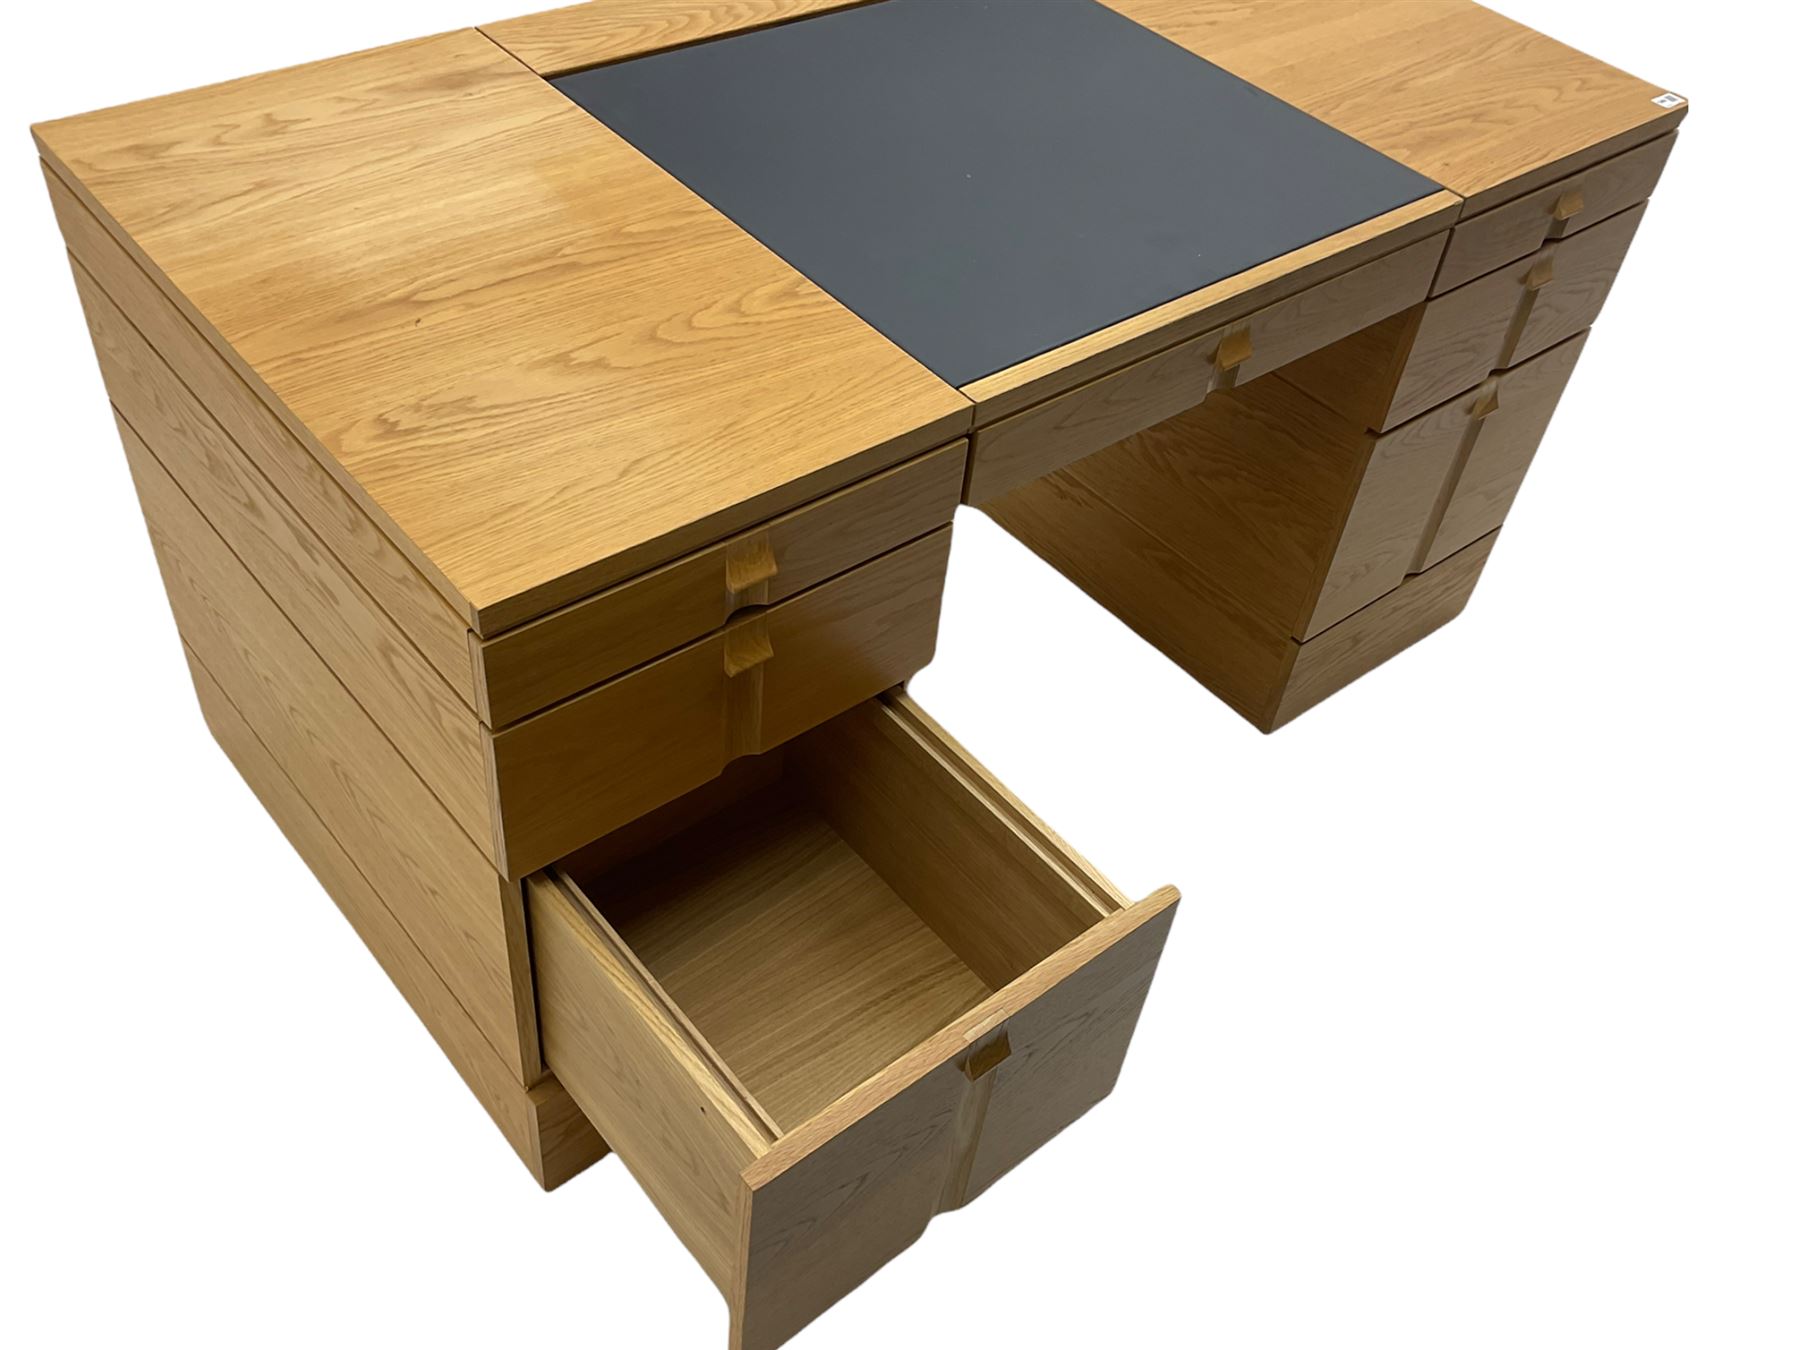 Marks and Spencer Home - light oak office desk - Image 8 of 11